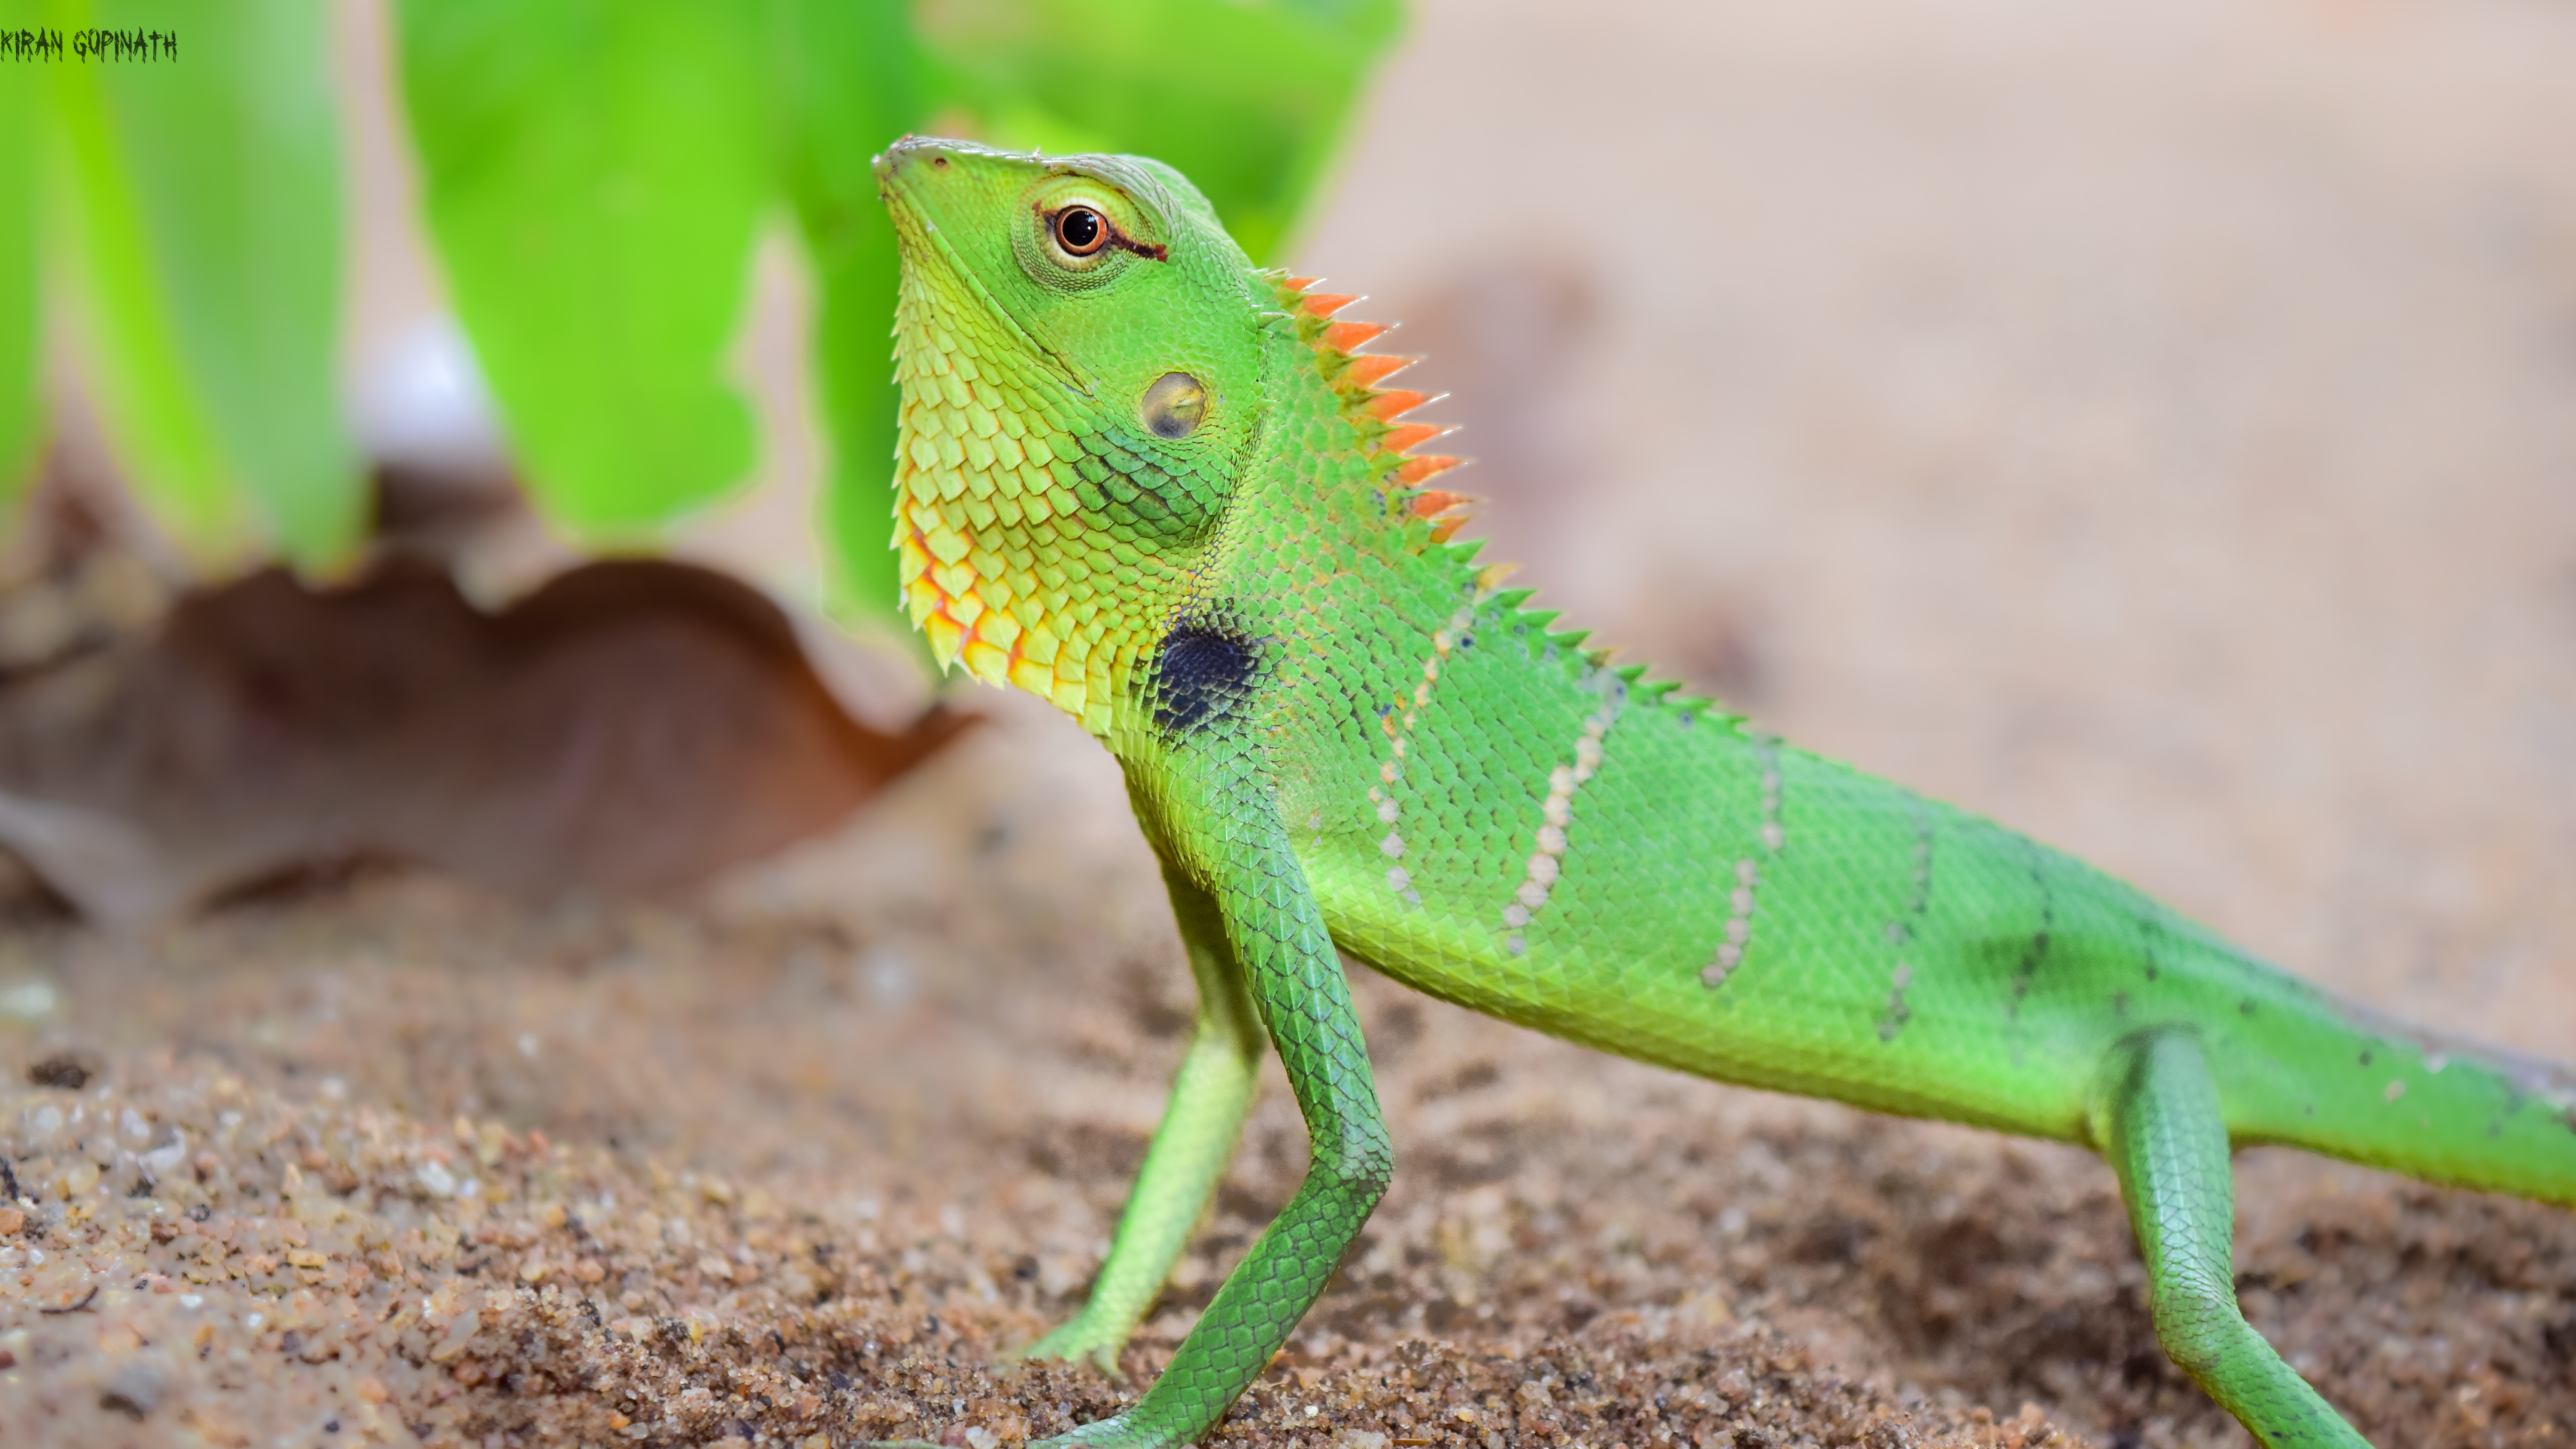 File:Chameleon (green).jpg - Wikimedia Commons